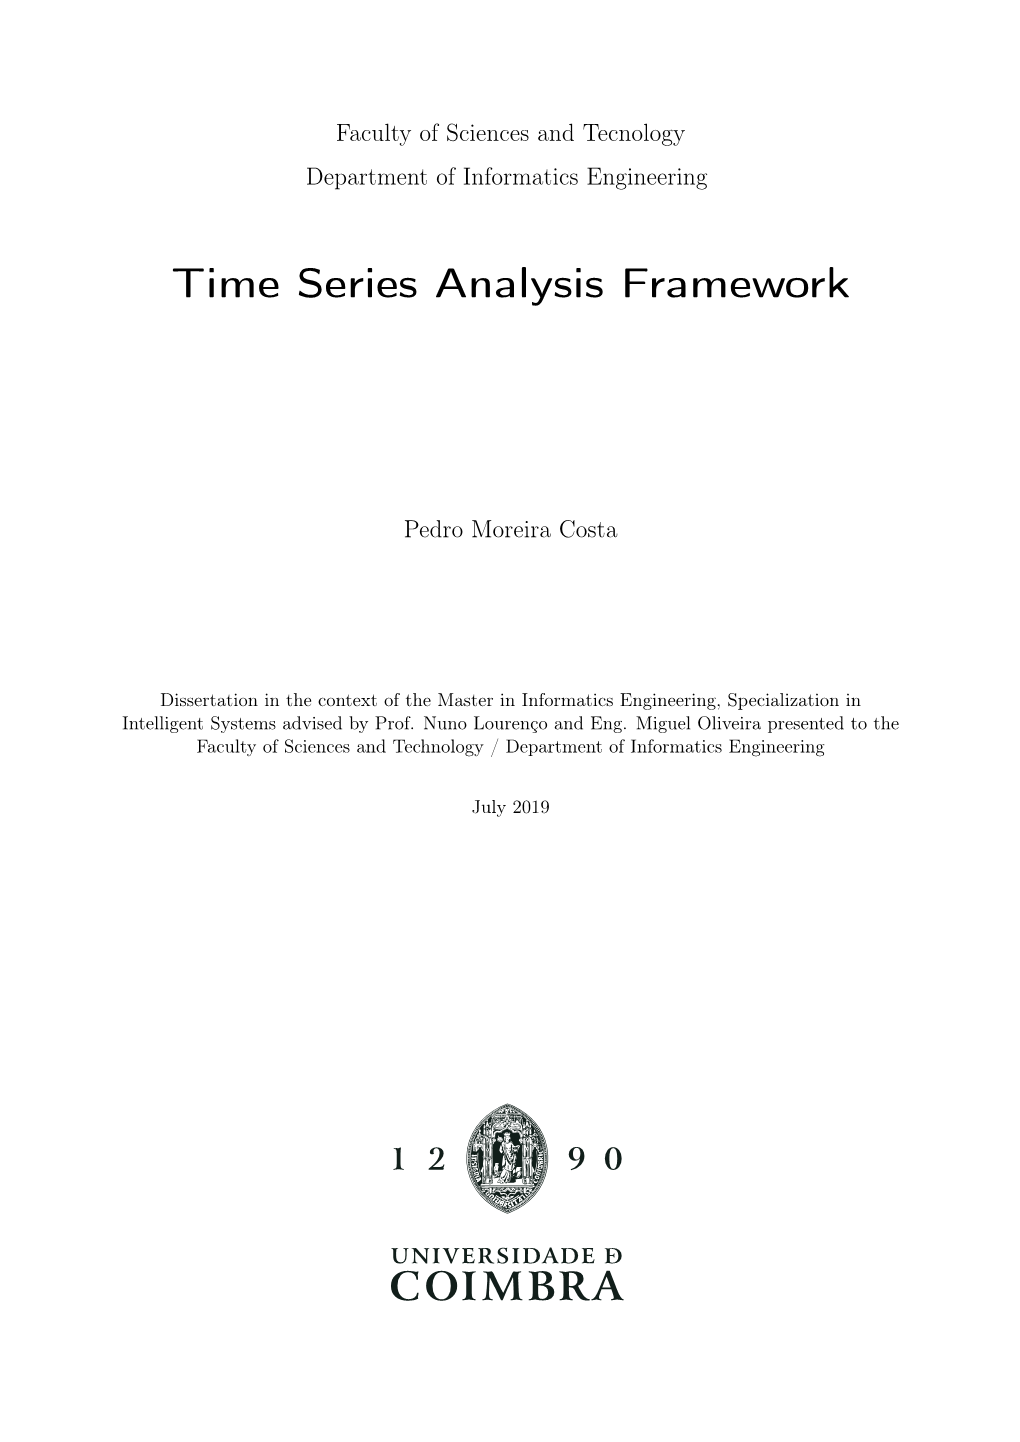 Time Series Analysis Framework